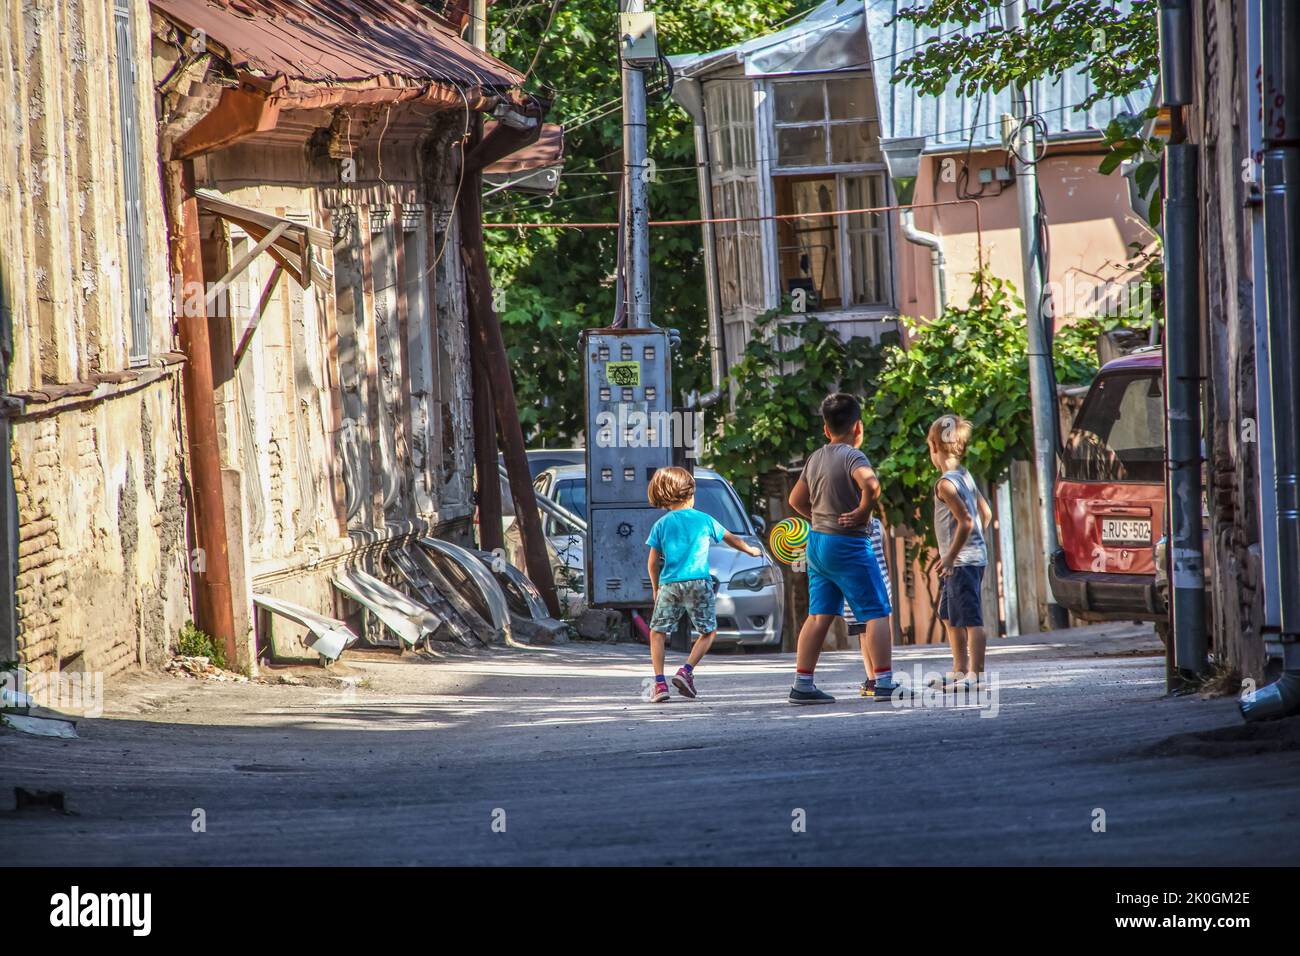 07 16 2019 Tbilissi Géorgie - Un groupe de jeunes garçons jouent au ballon dans une ruelle arrière de la vieille ville de Tbilissi entourée de bâtiments à ramanilles Banque D'Images